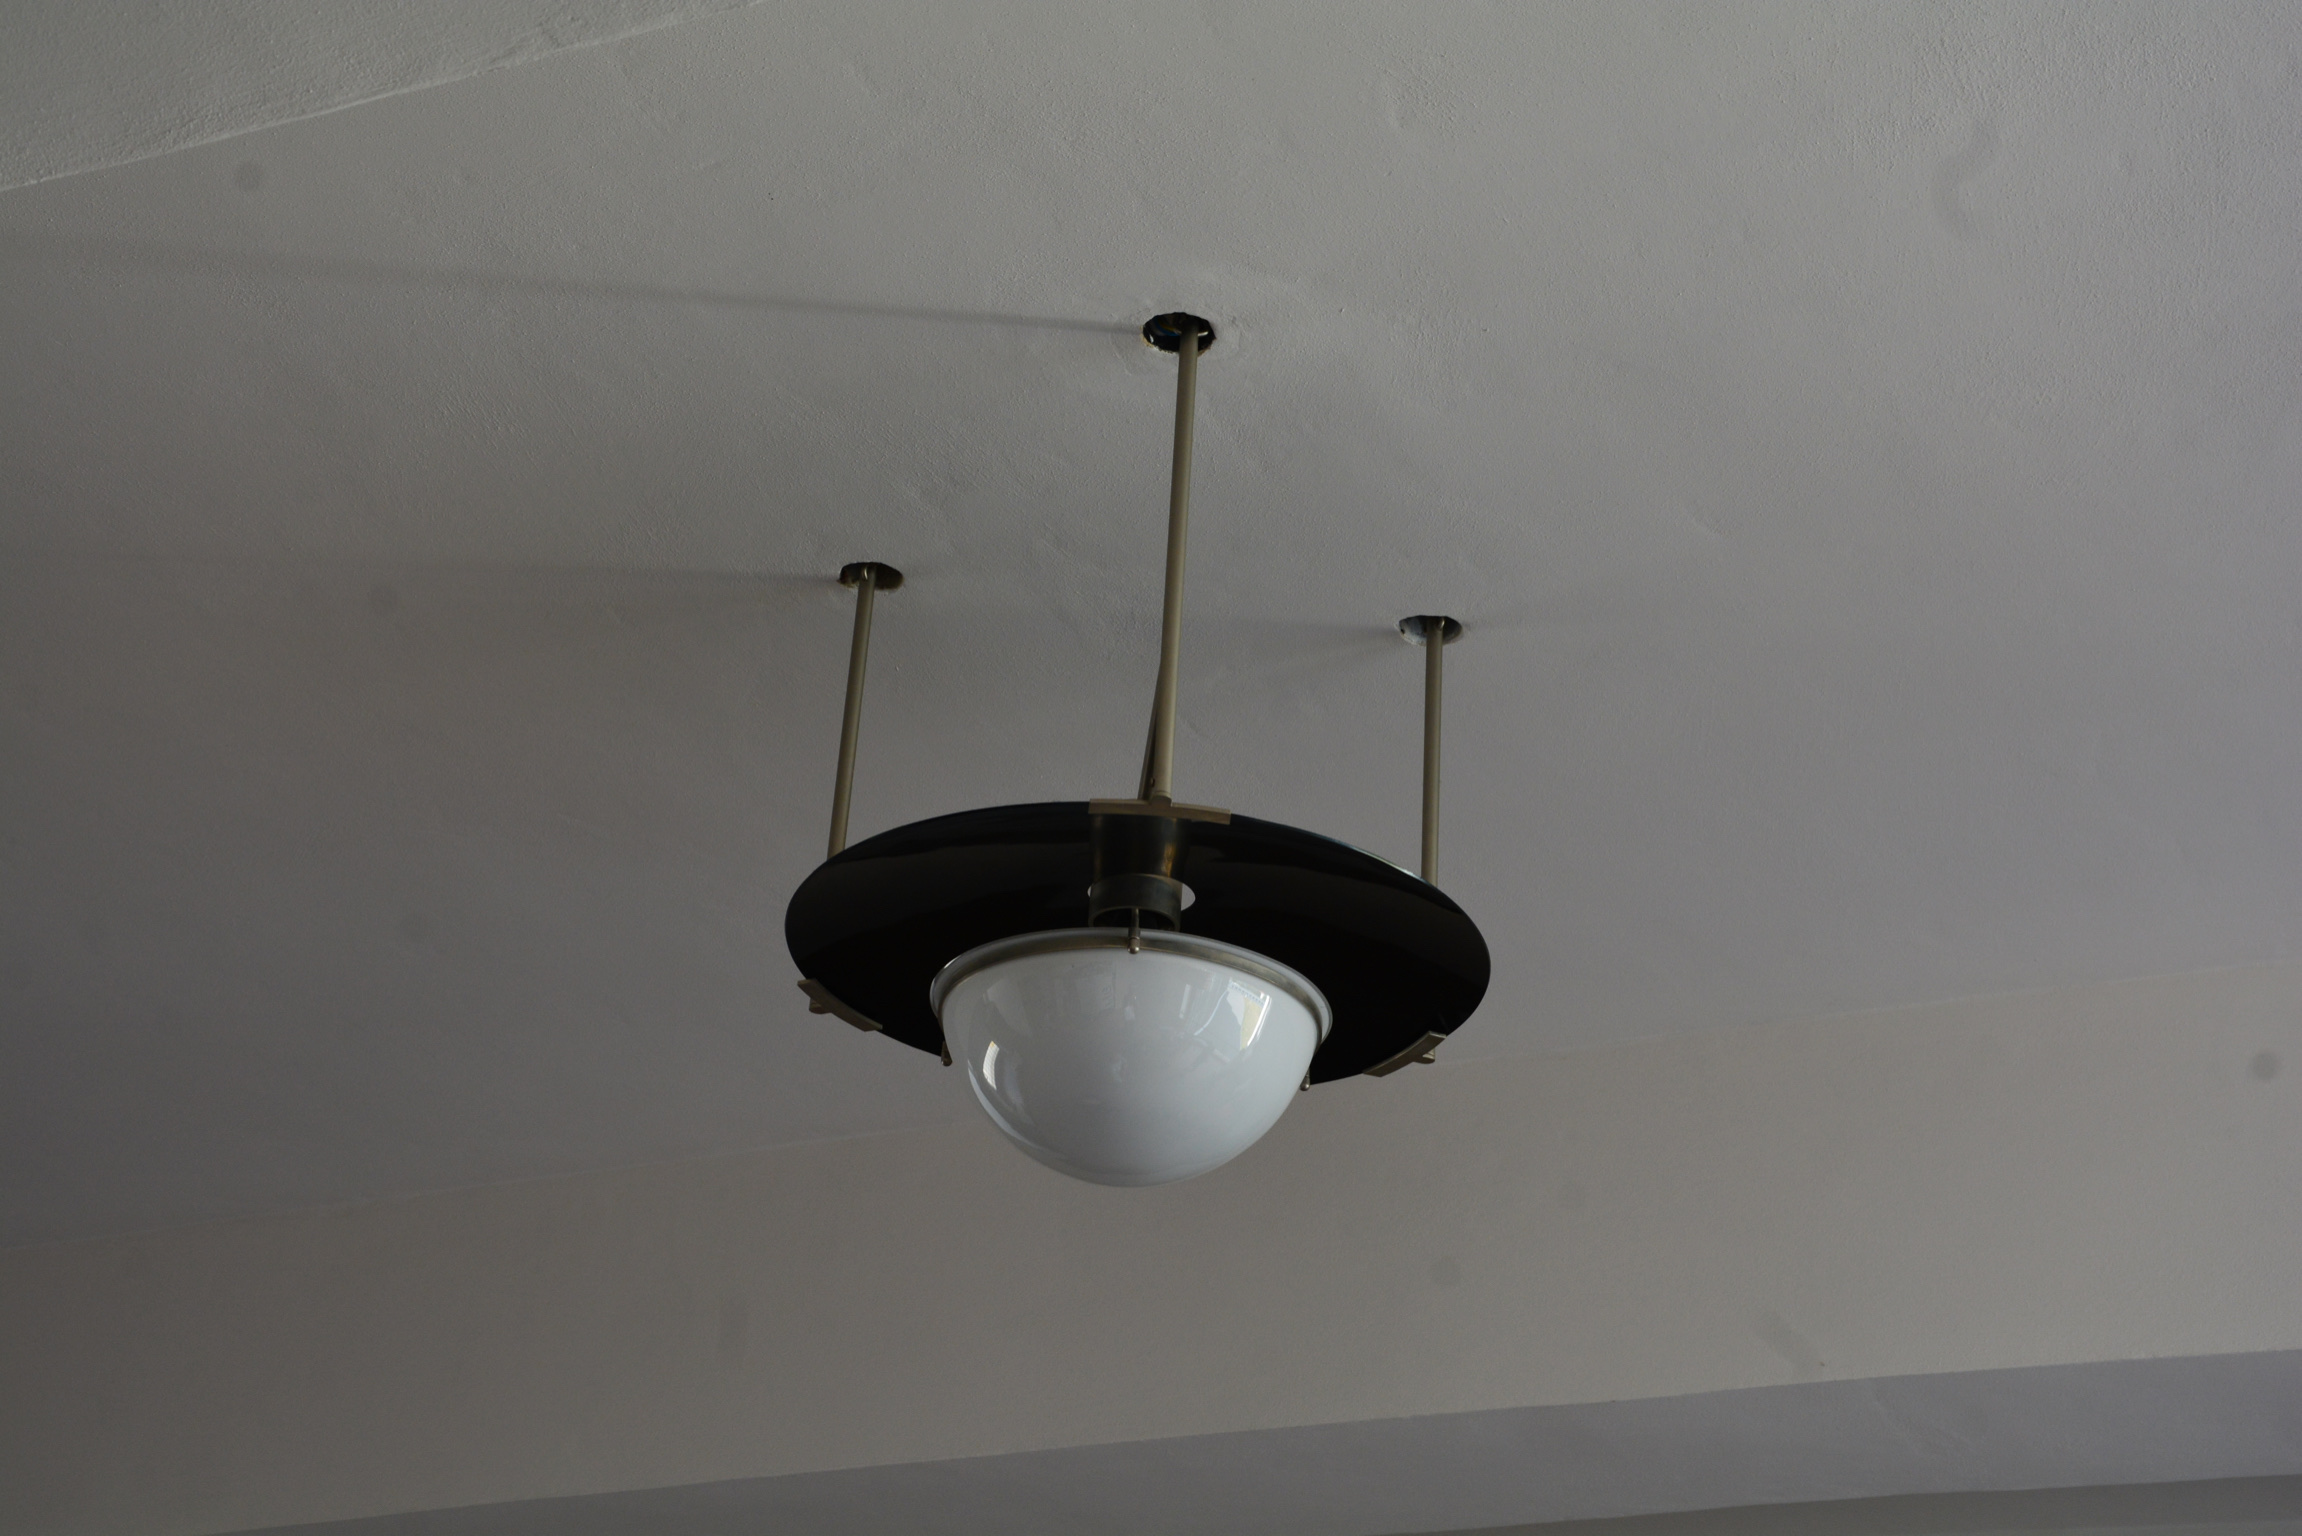 bauhaus ceiling light fitting in a meisterhaus dessau